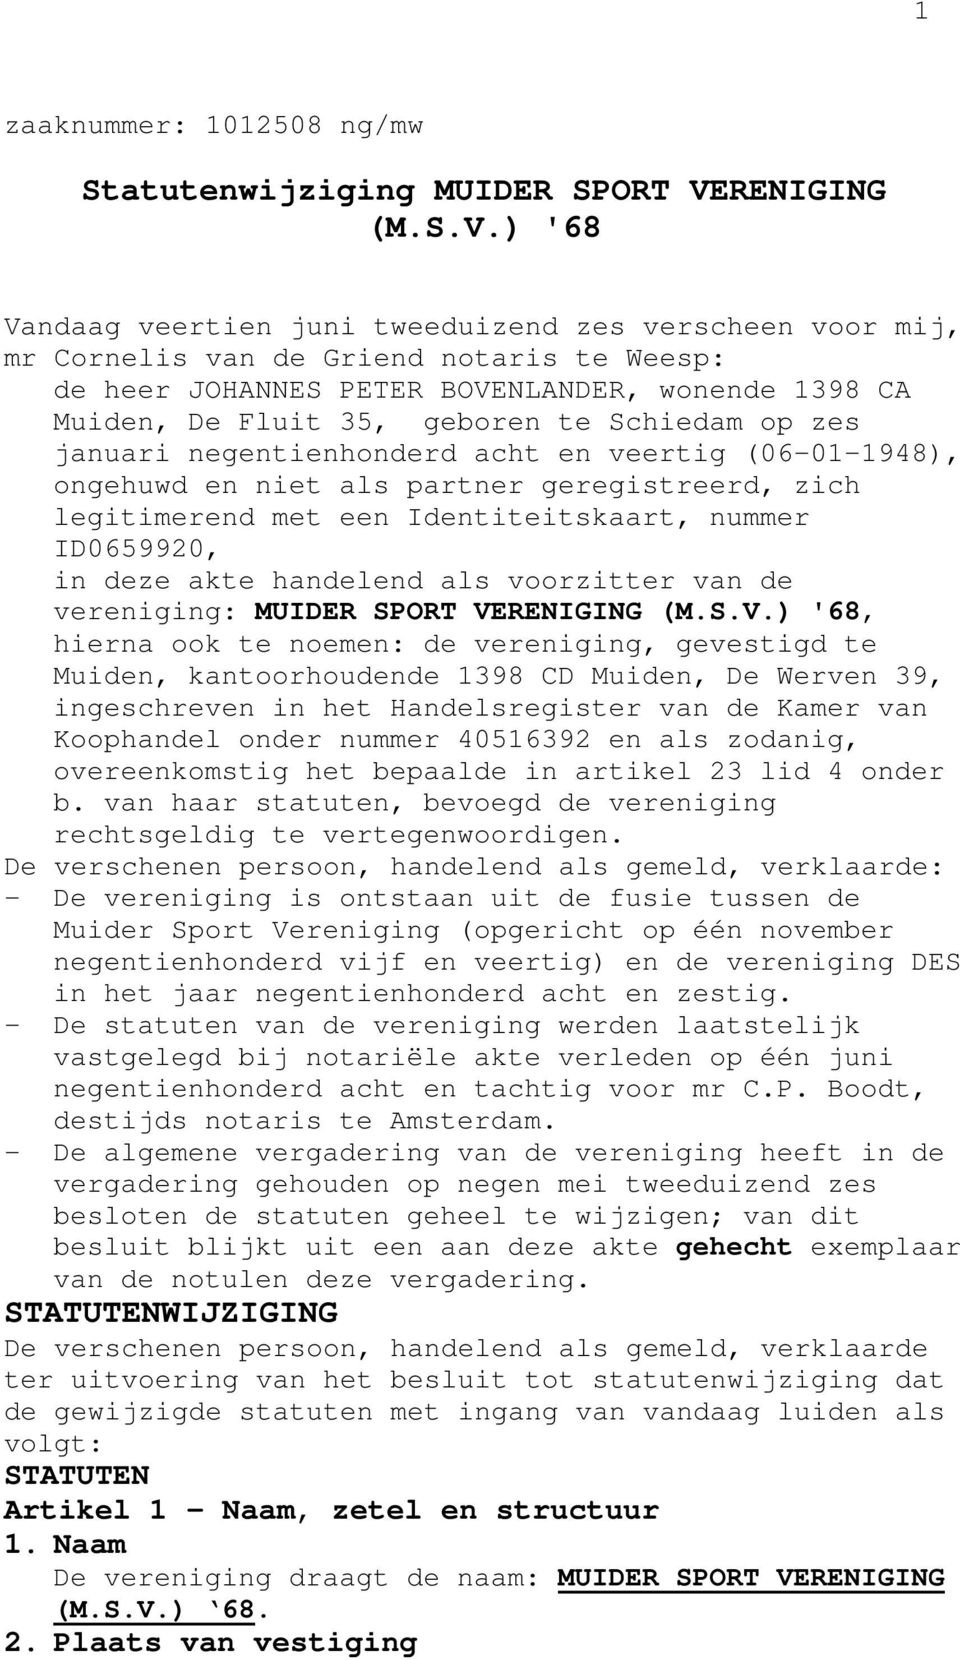 ) '68 Vandaag veertien juni tweeduizend zes verscheen voor mij, mr Cornelis van de Griend notaris te Weesp: de heer JOHANNES PETER BOVENLANDER, wonende 1398 CA Muiden, De Fluit 35, geboren te